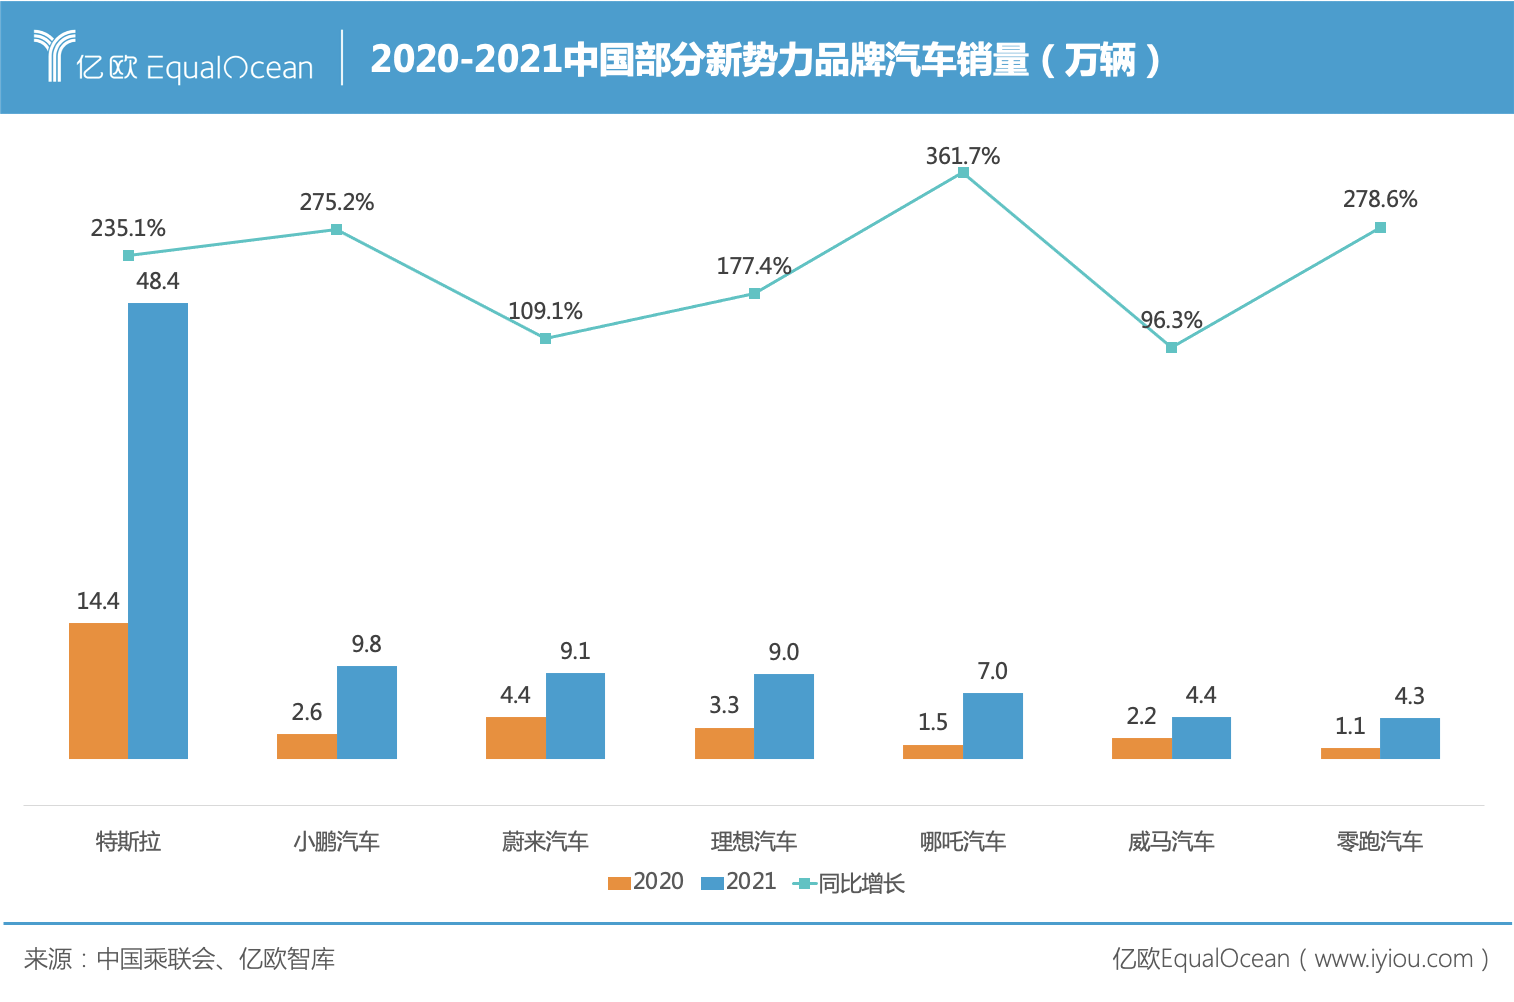 2020-2021中国部分新势力品牌汽车销量（万辆）.jpg